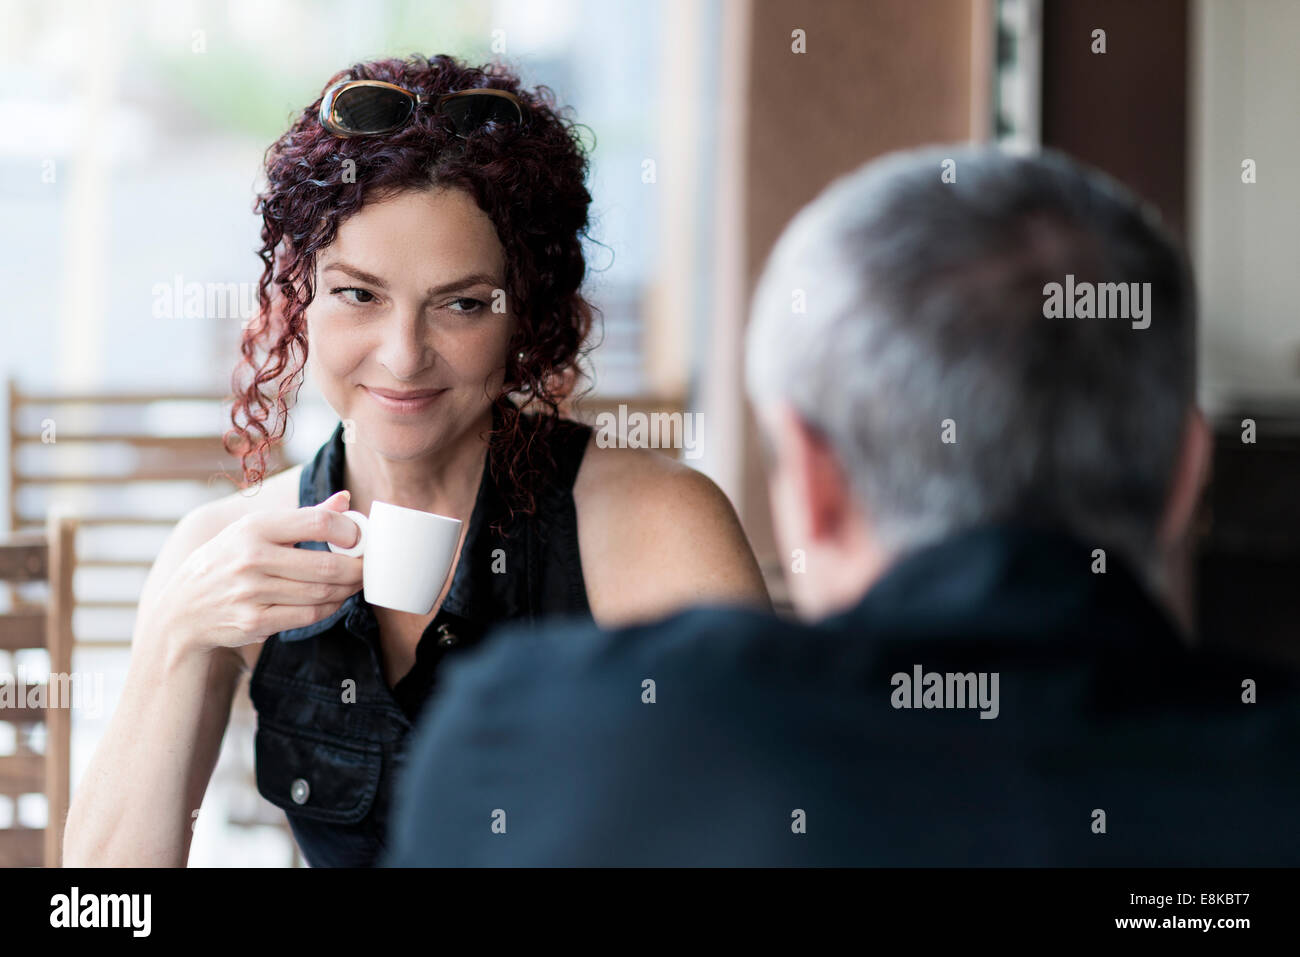 Mildlife dating-plus ouple dans un coffee shop Banque D'Images